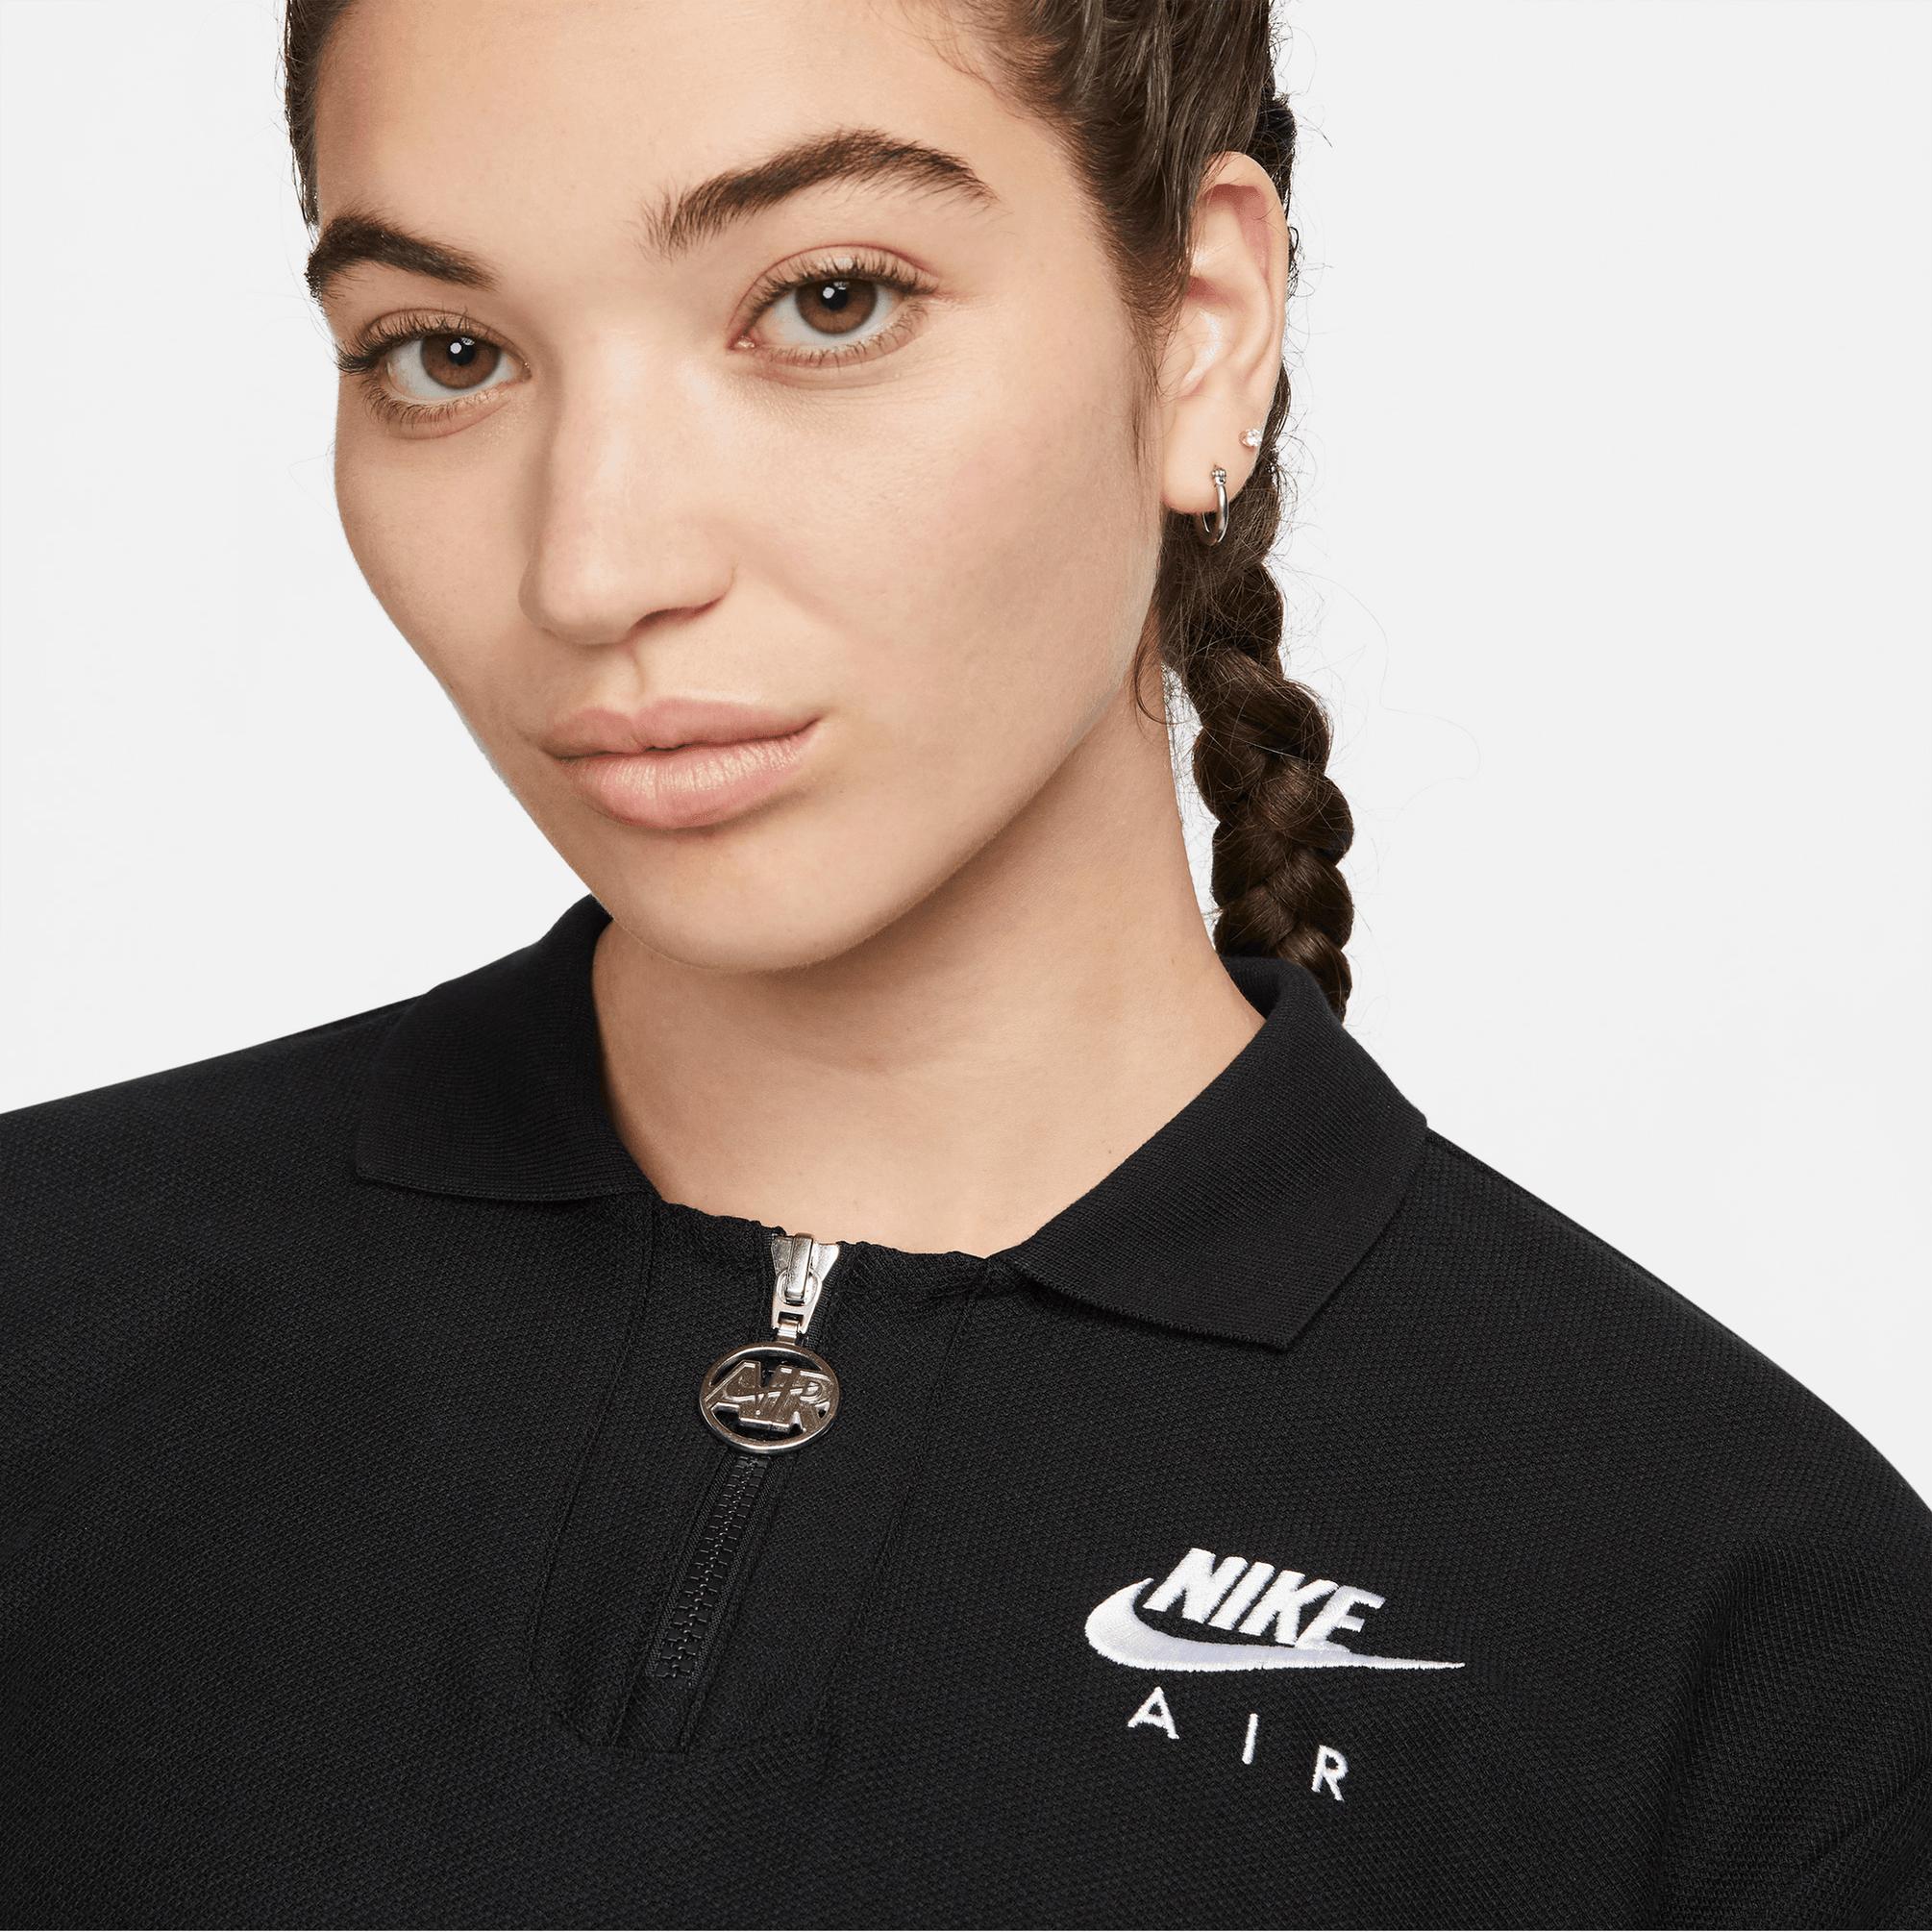  Nike Air Kadın Siyah T-shirt